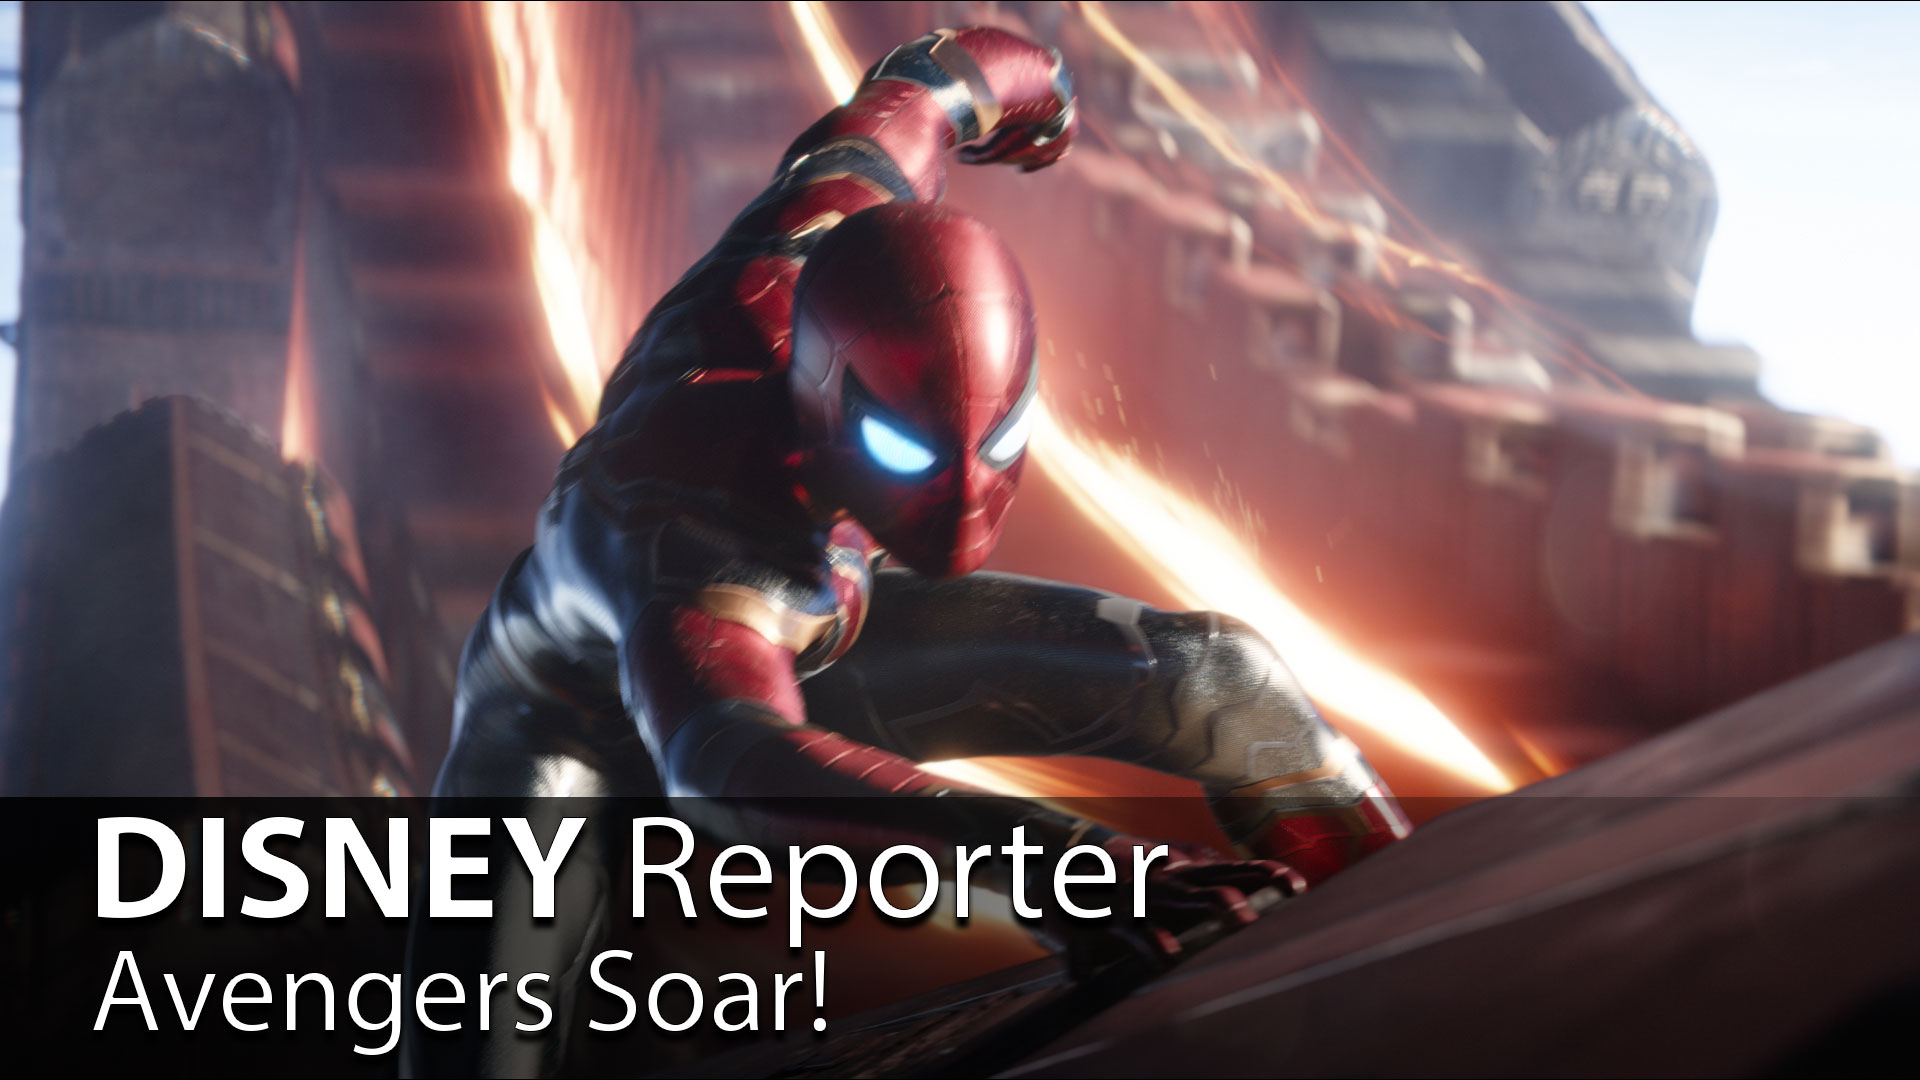 Avengers Soar! – DISNEY REPORTER